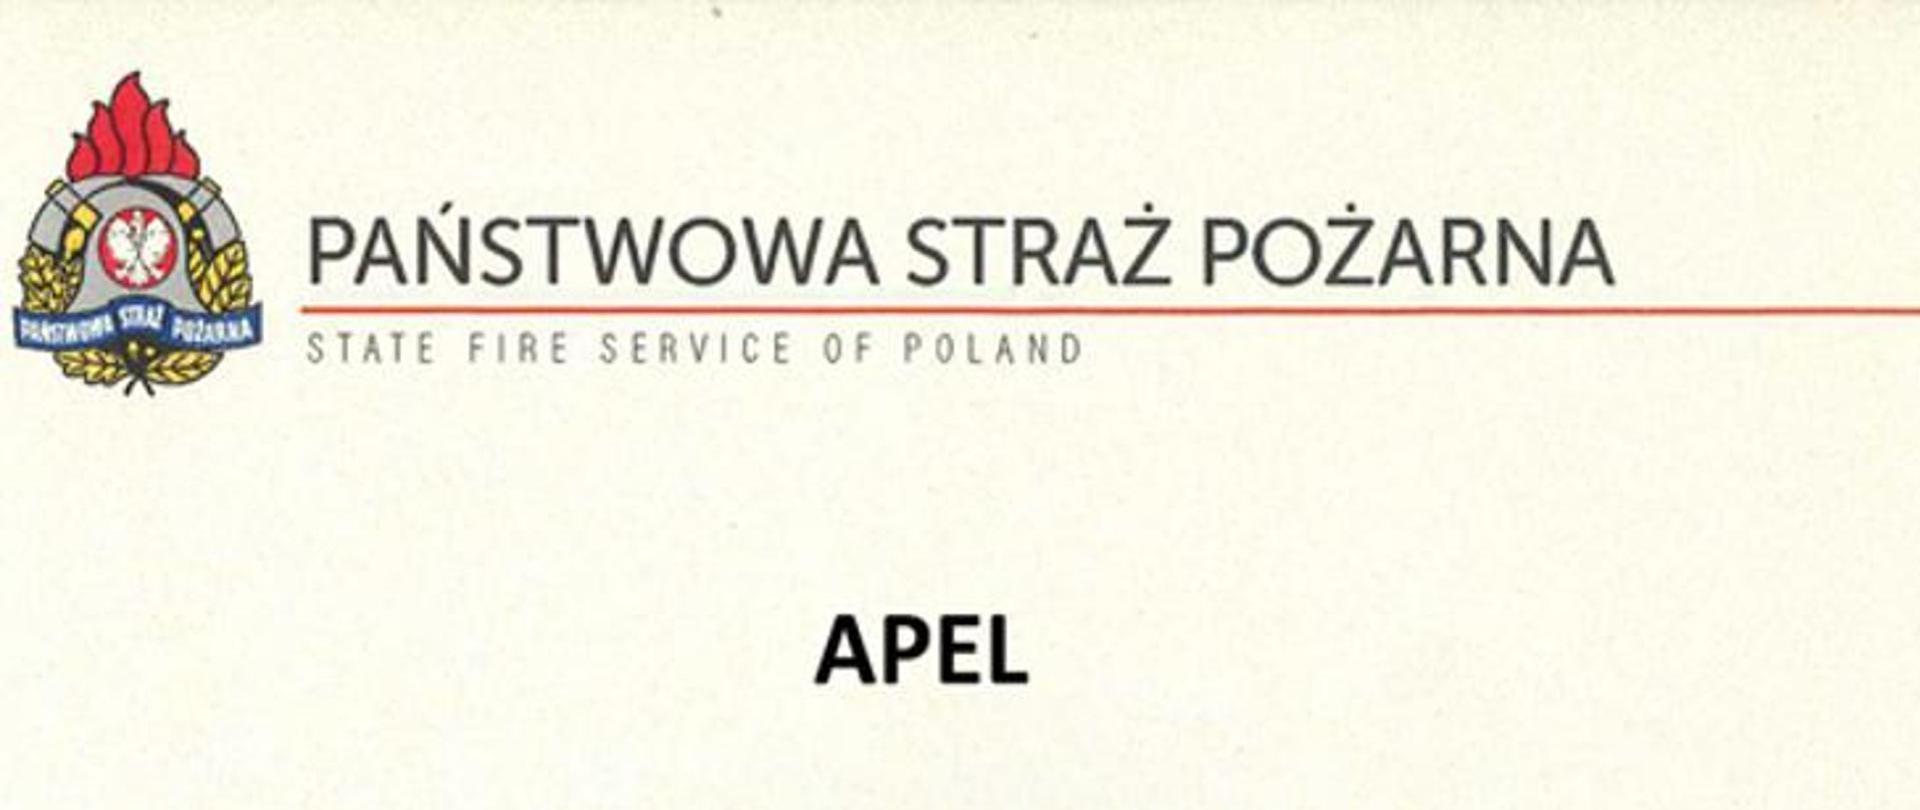 Zdjęcie przedstawia Logo PSP i napisy Państwowa Straż Pożarna i Apel